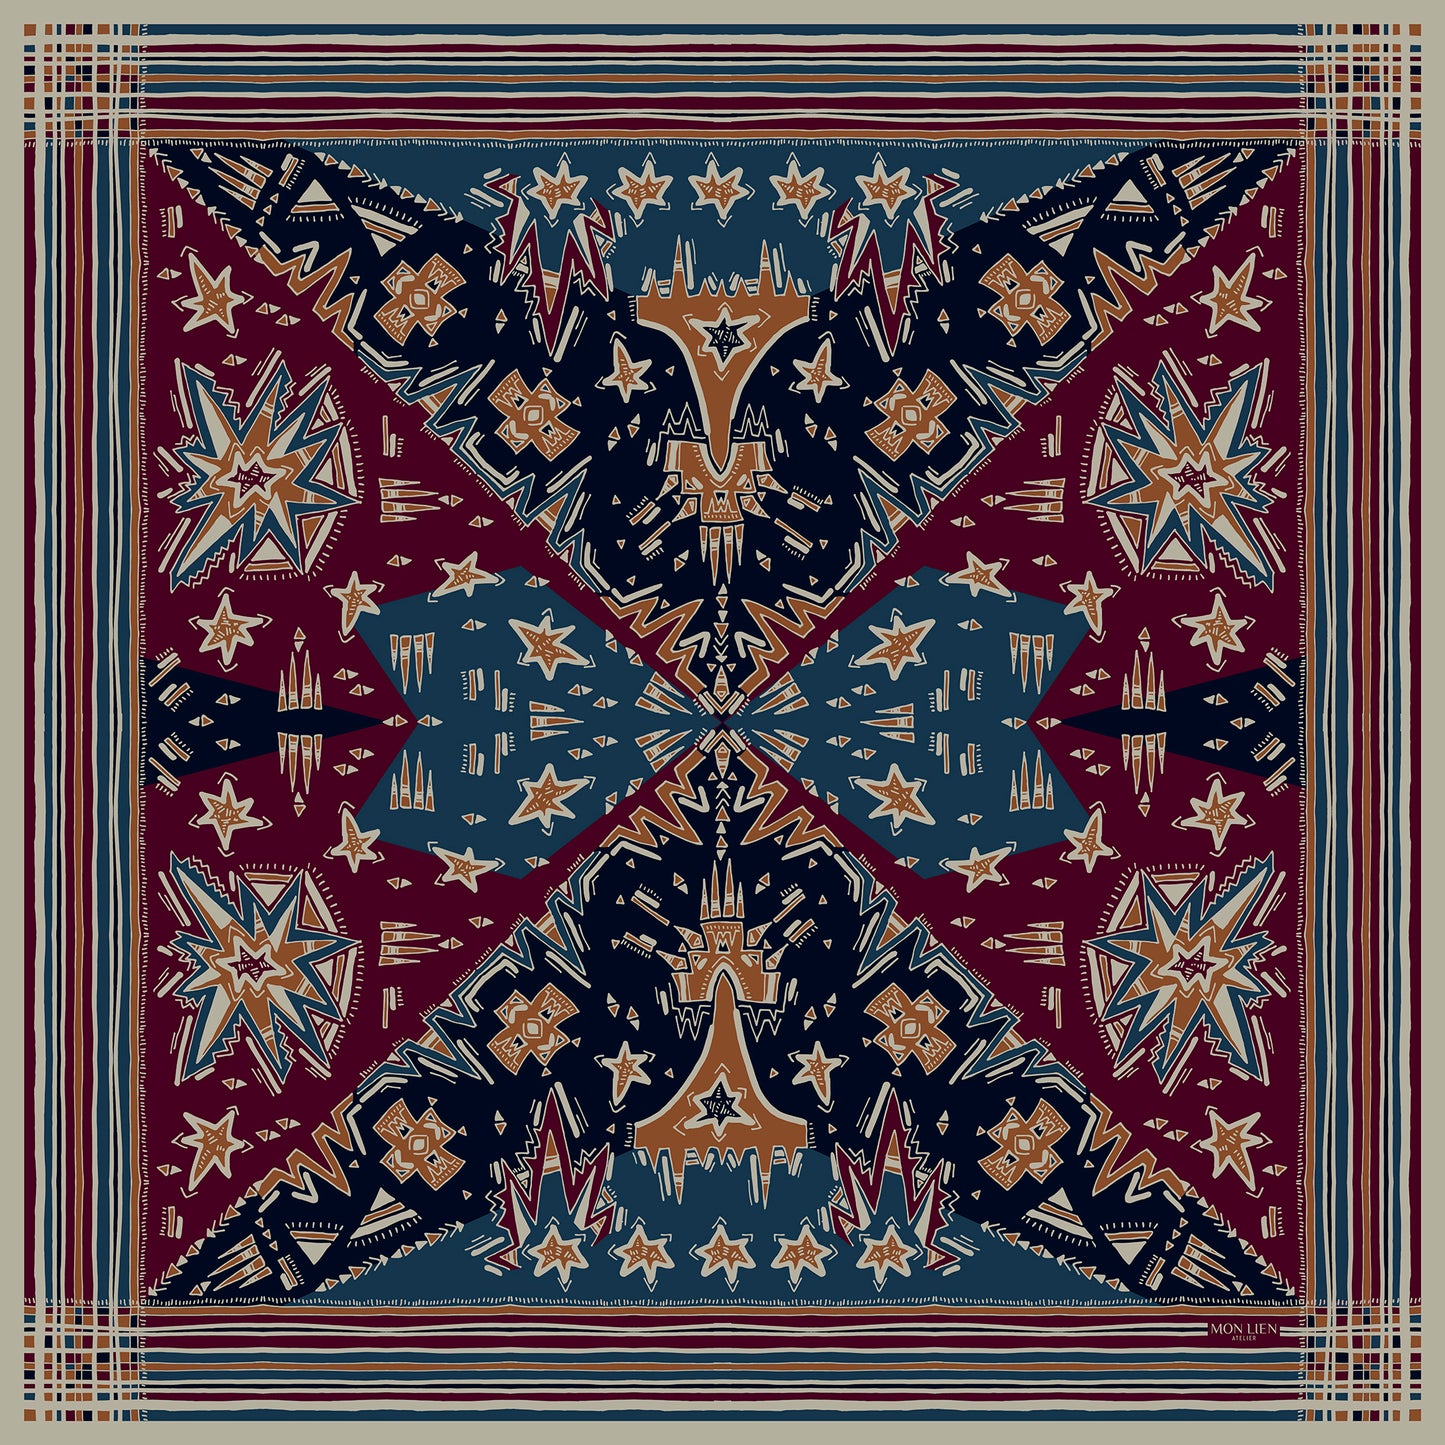 foulard chic quadrato in seta vista intera con motivi in composizione e bordo a righe palette bordeaux e blu